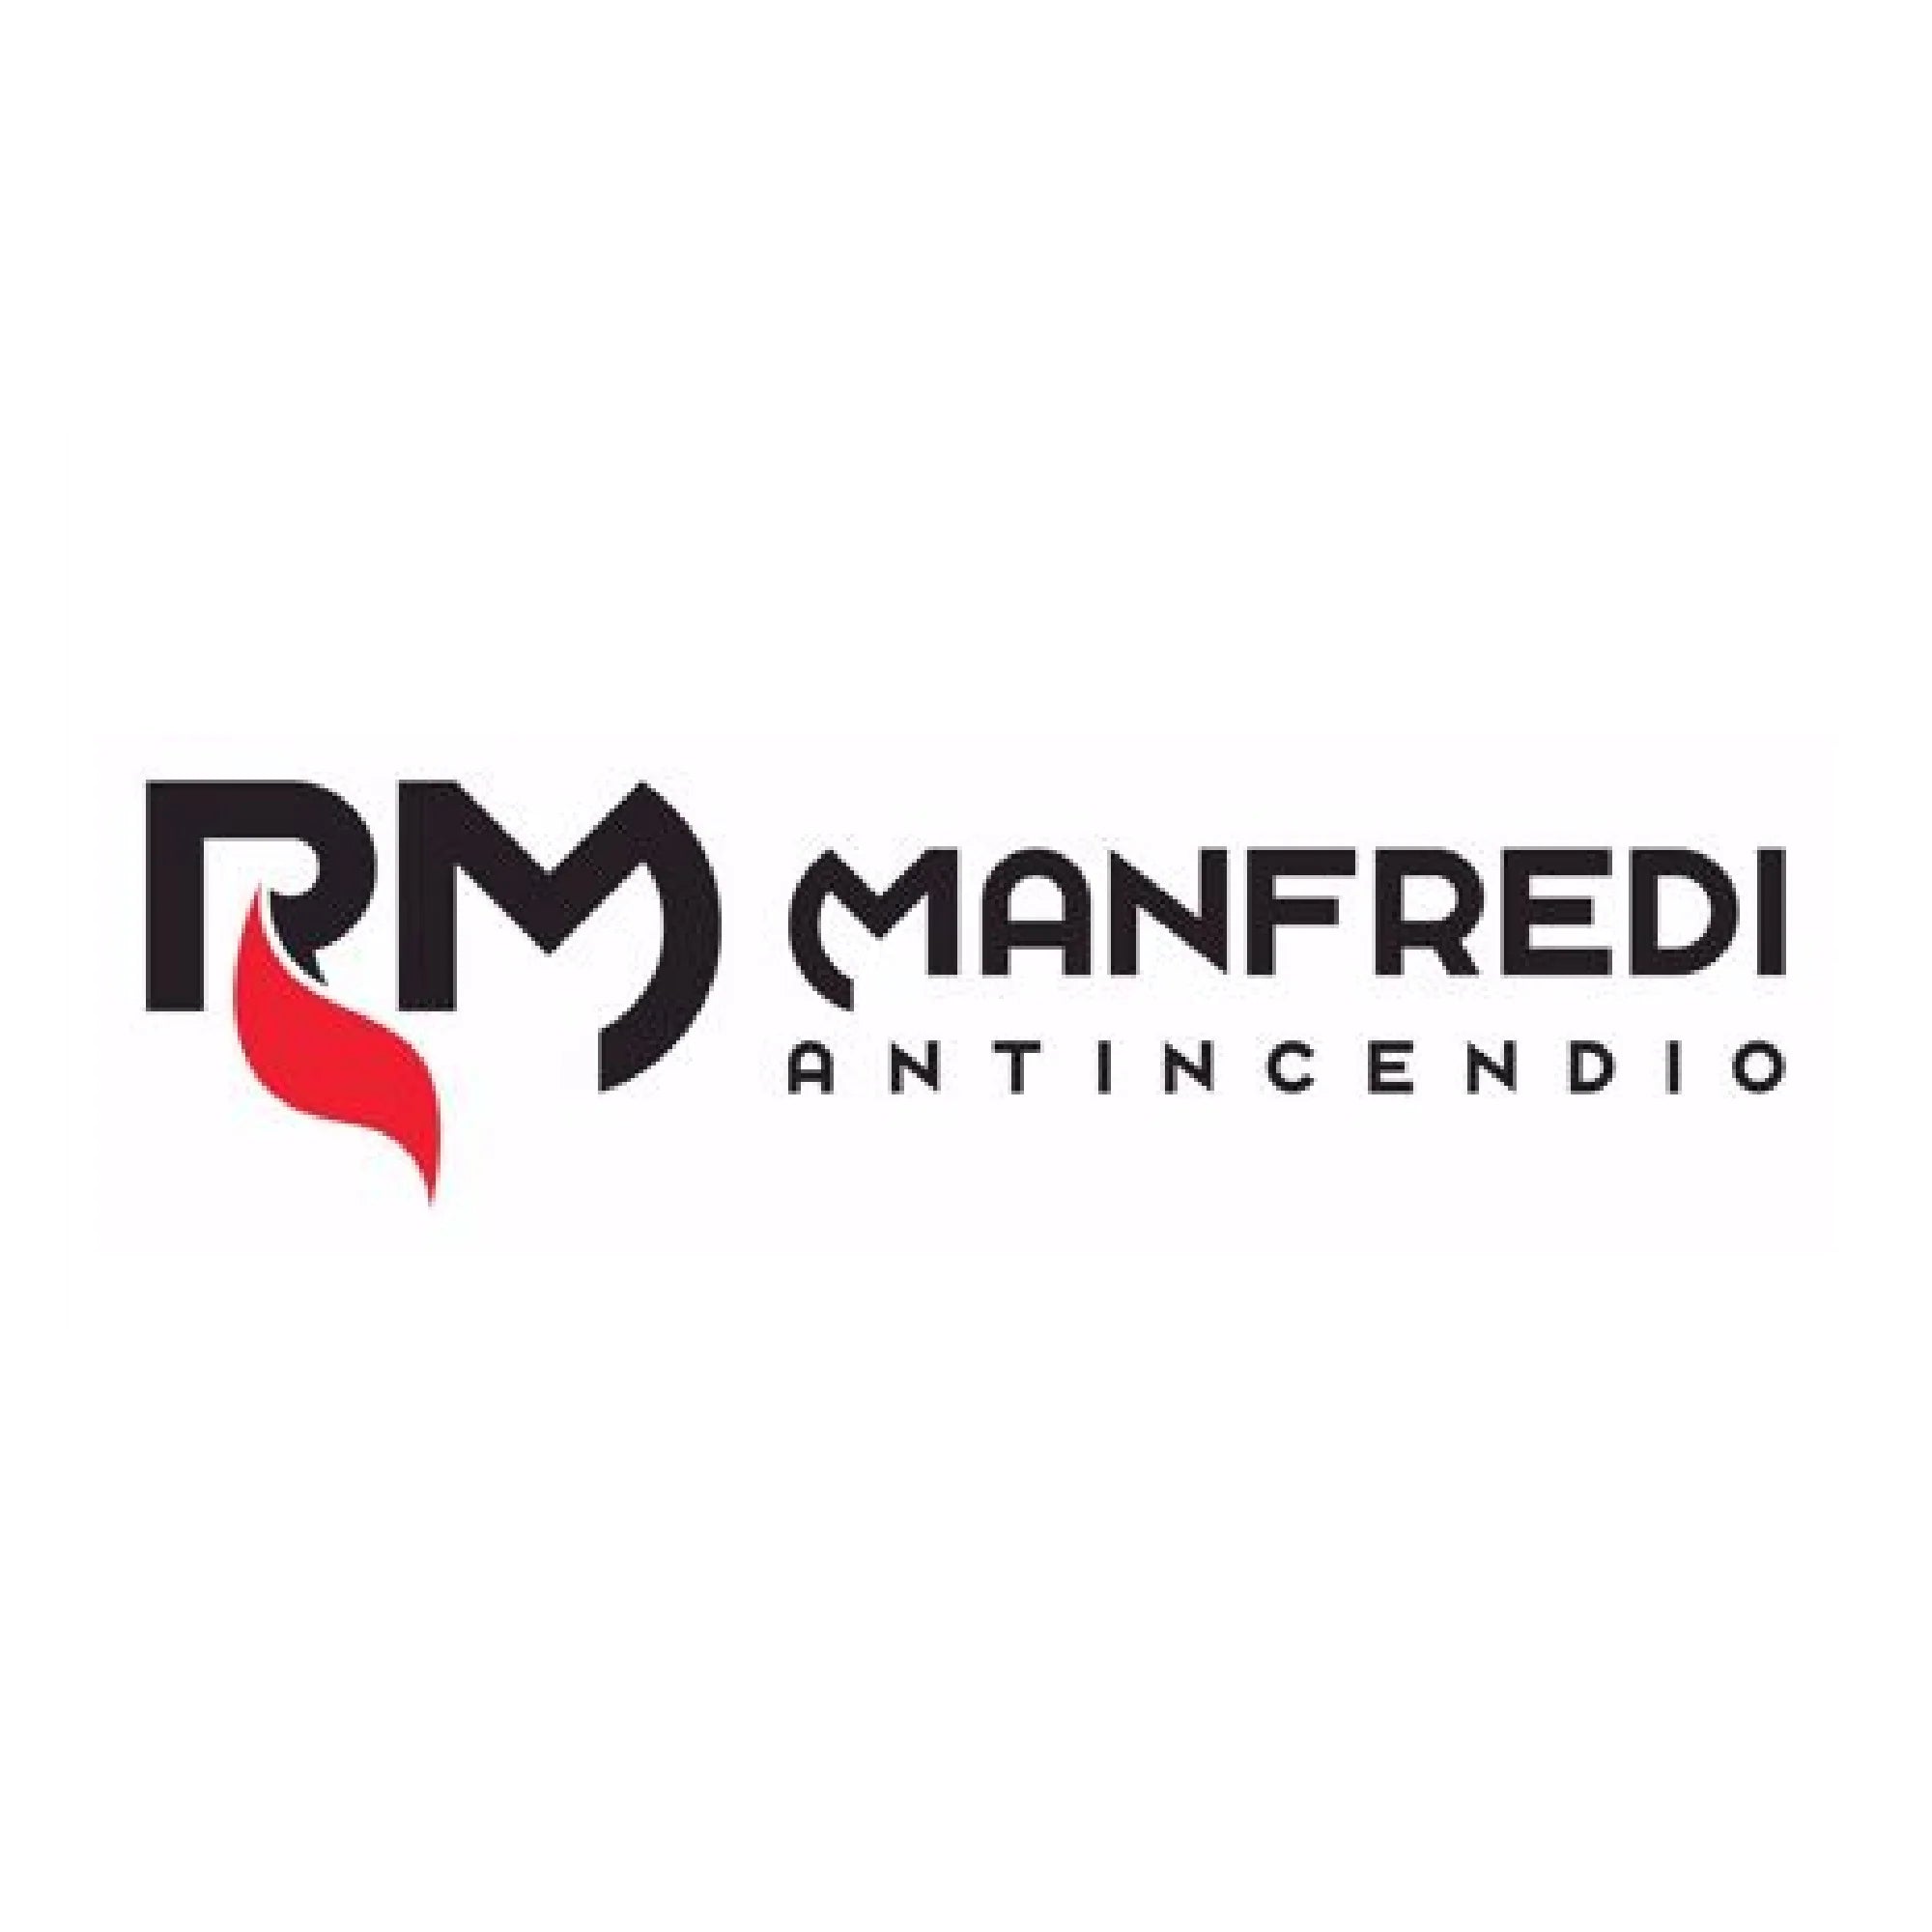 R.M. Manfredi